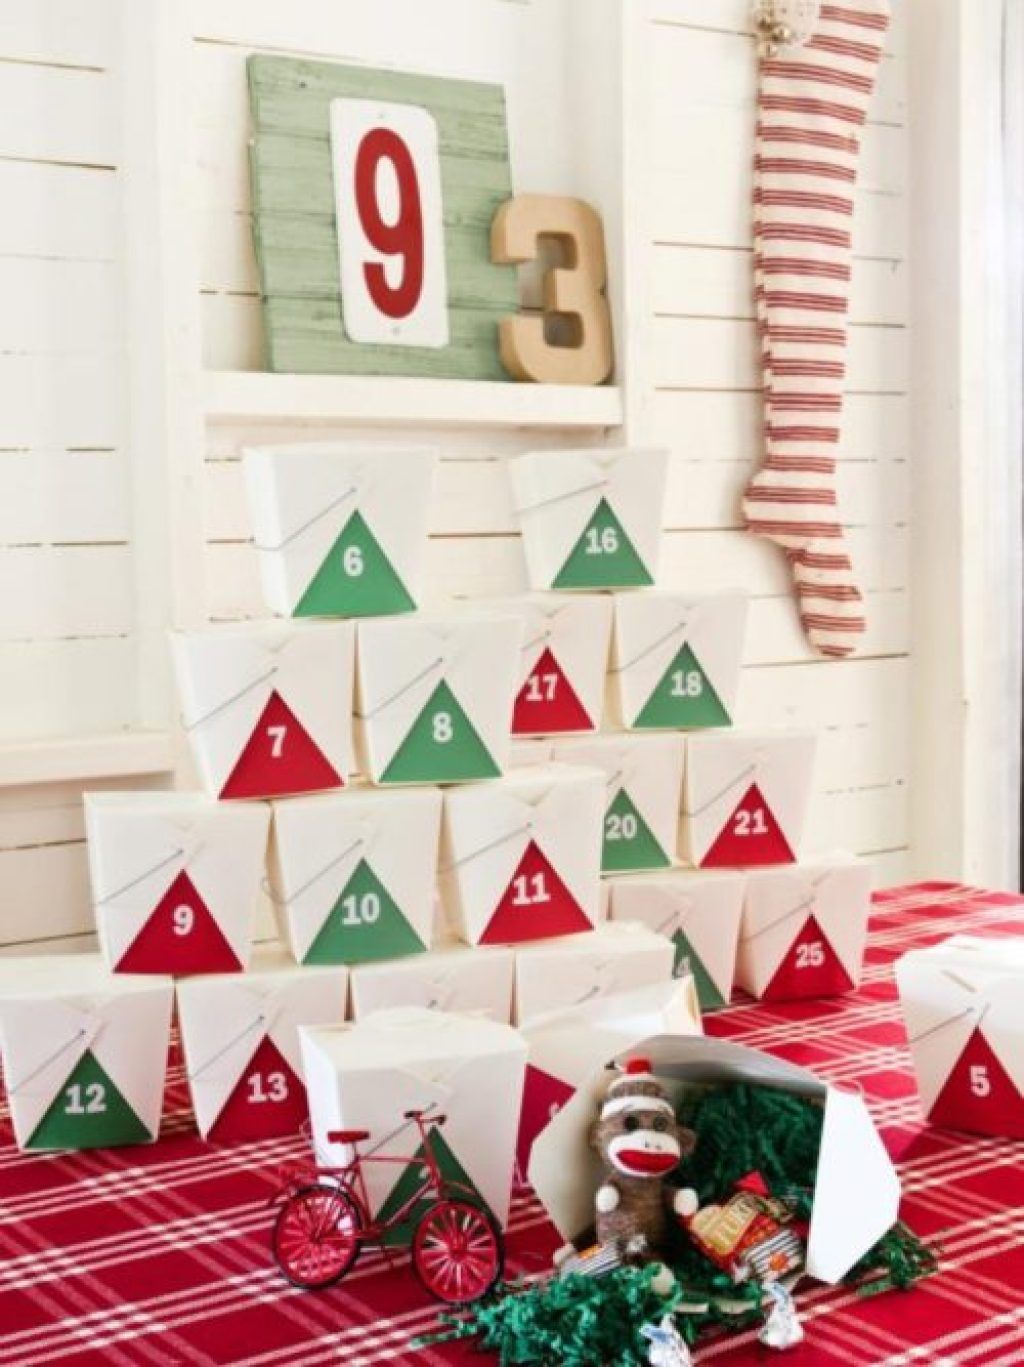 Caixa de menjar per emportar calendari d’advent bricolatge decoracions de Nadal